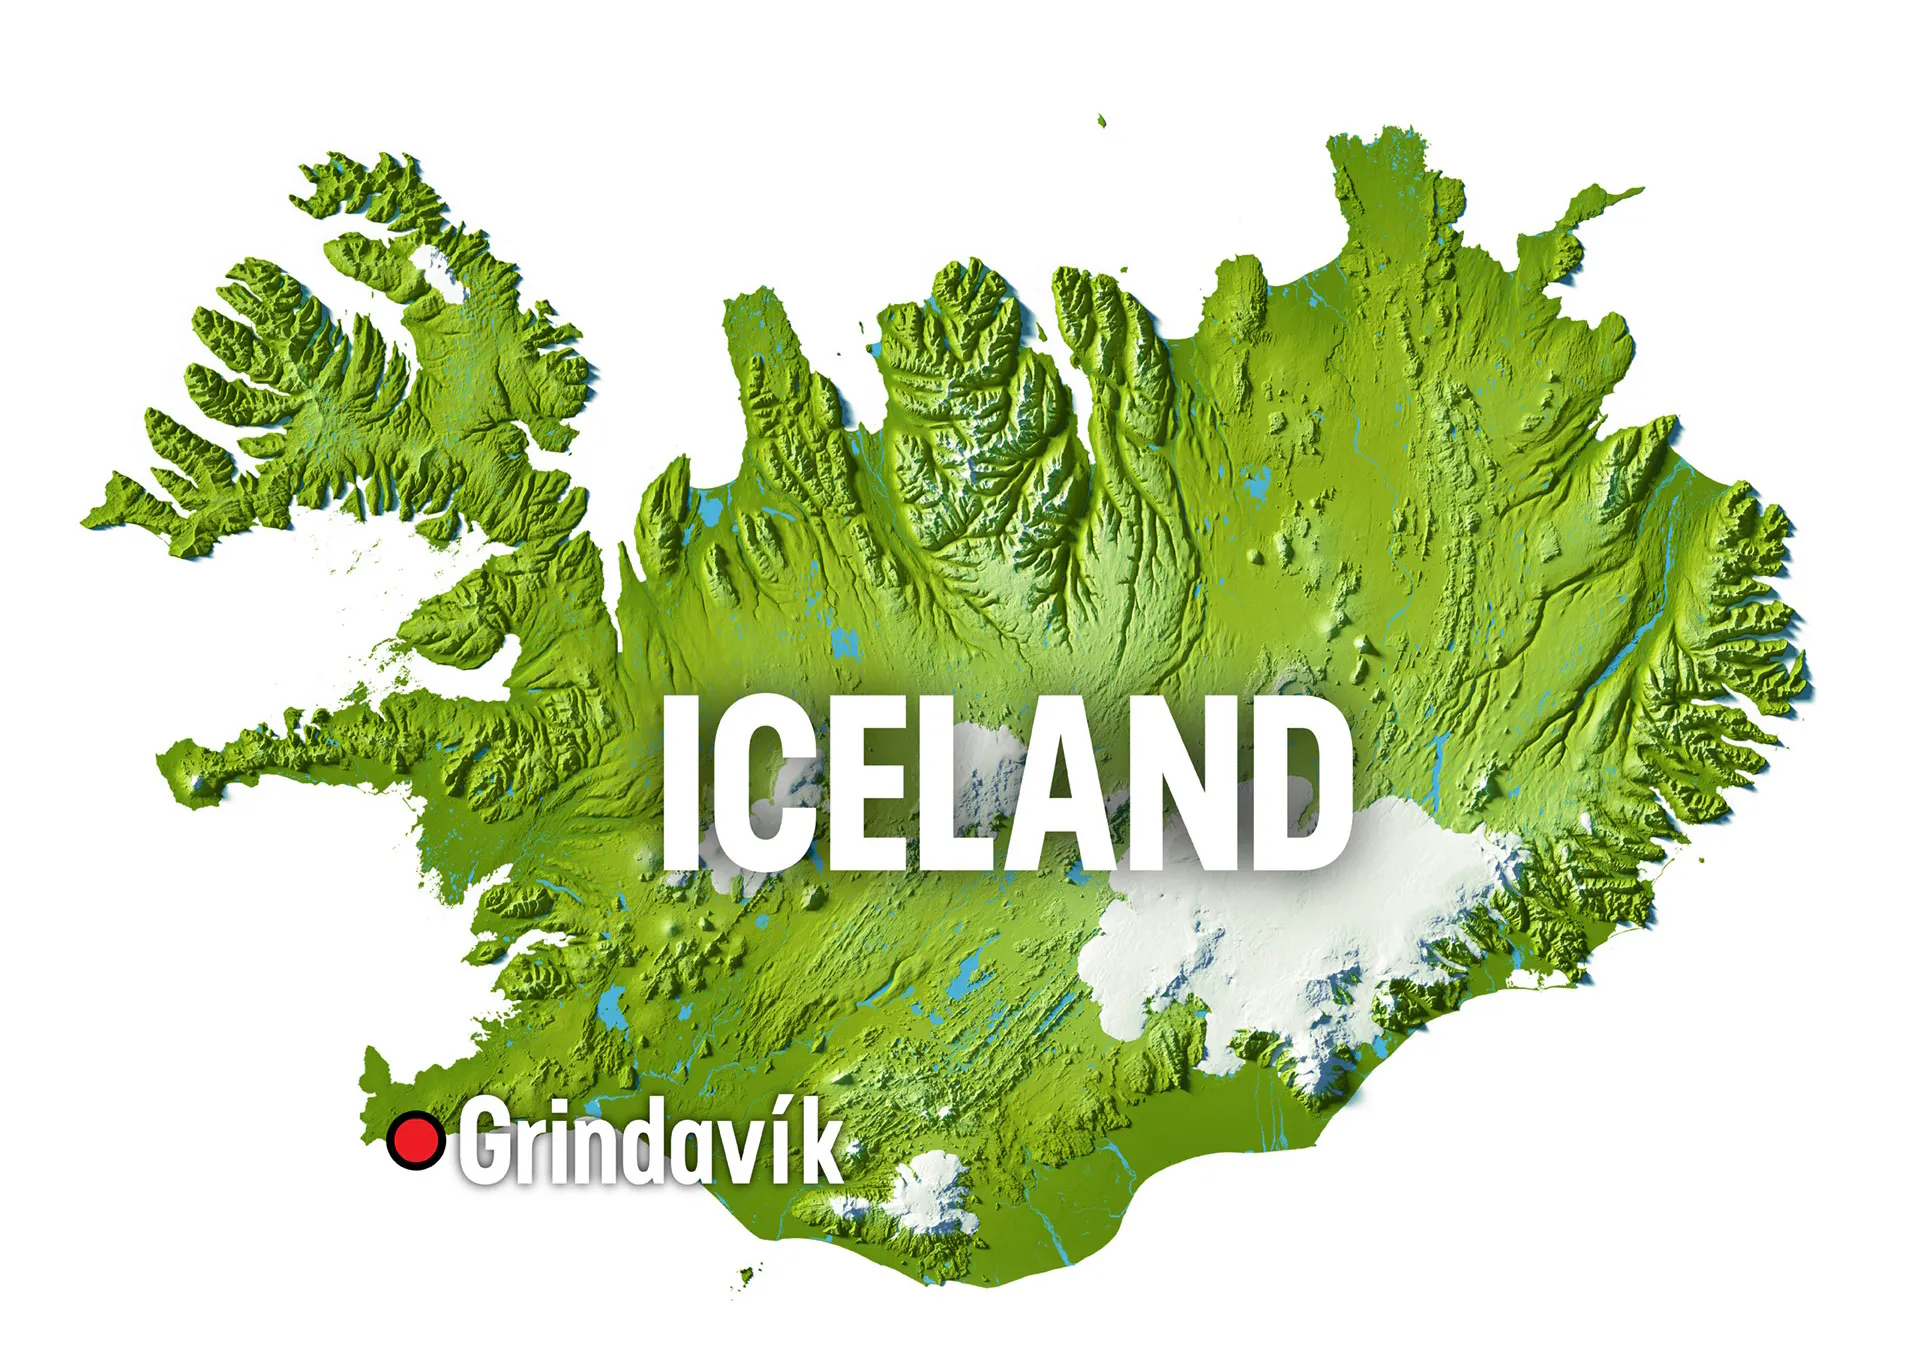 Lage Grindavík - Islandkarte; @VisitIceland